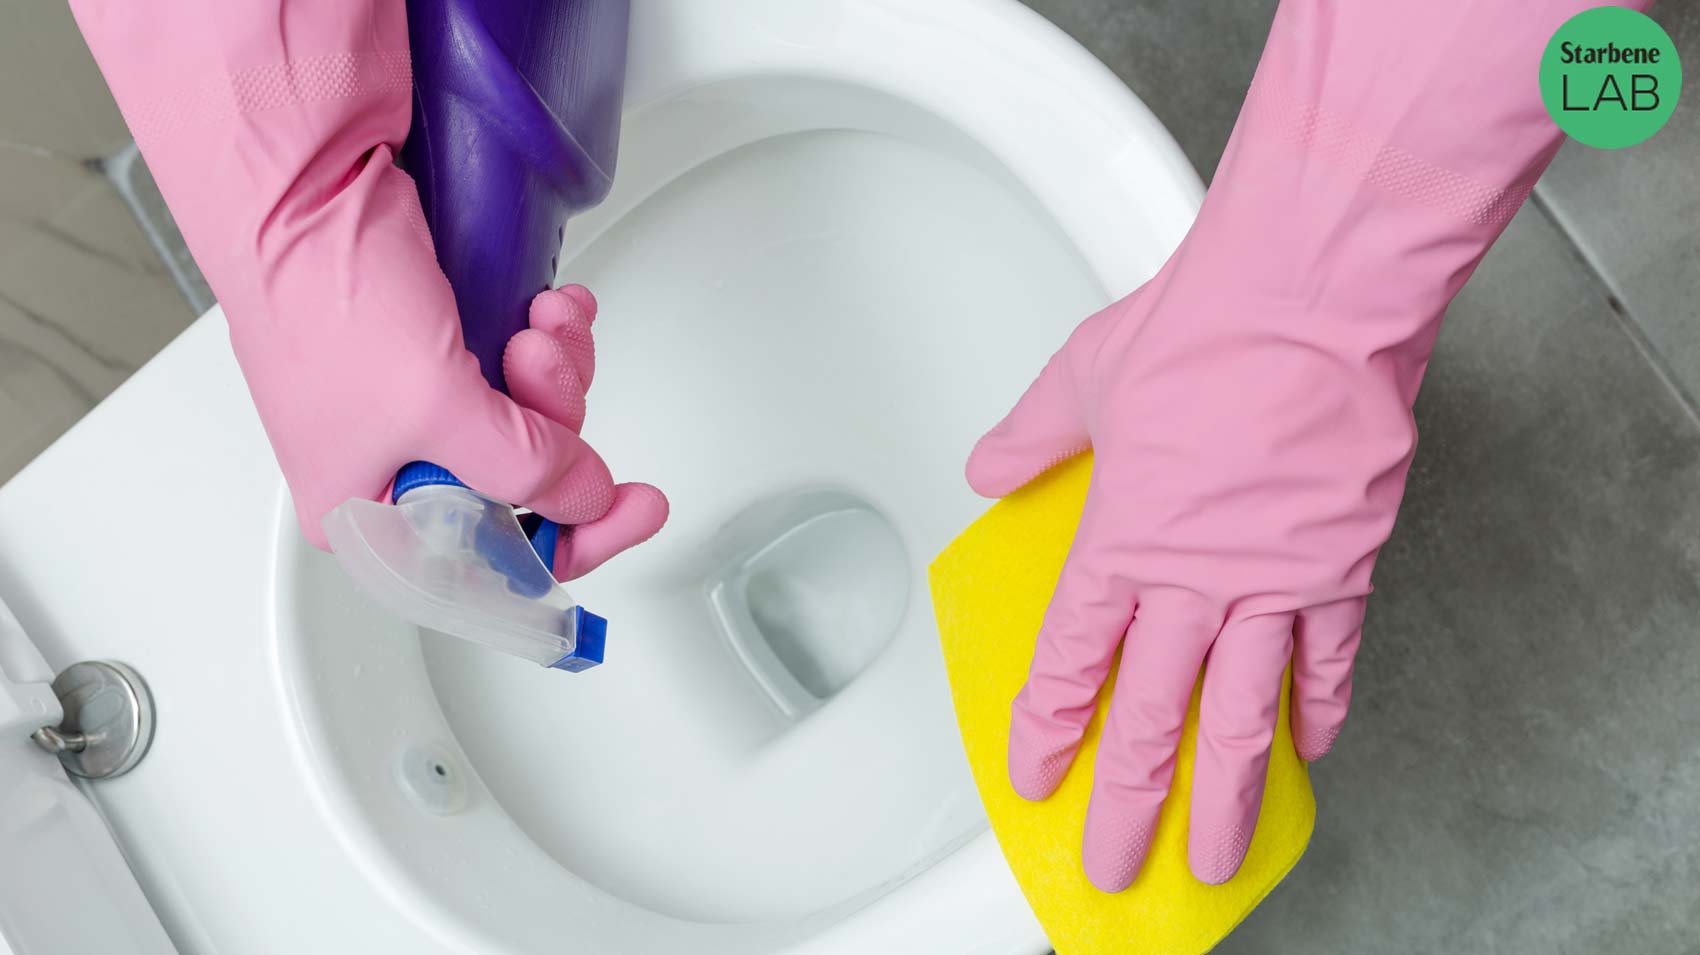 Wc Net Detergente WC Igiene Totale Gel per Sanitari e